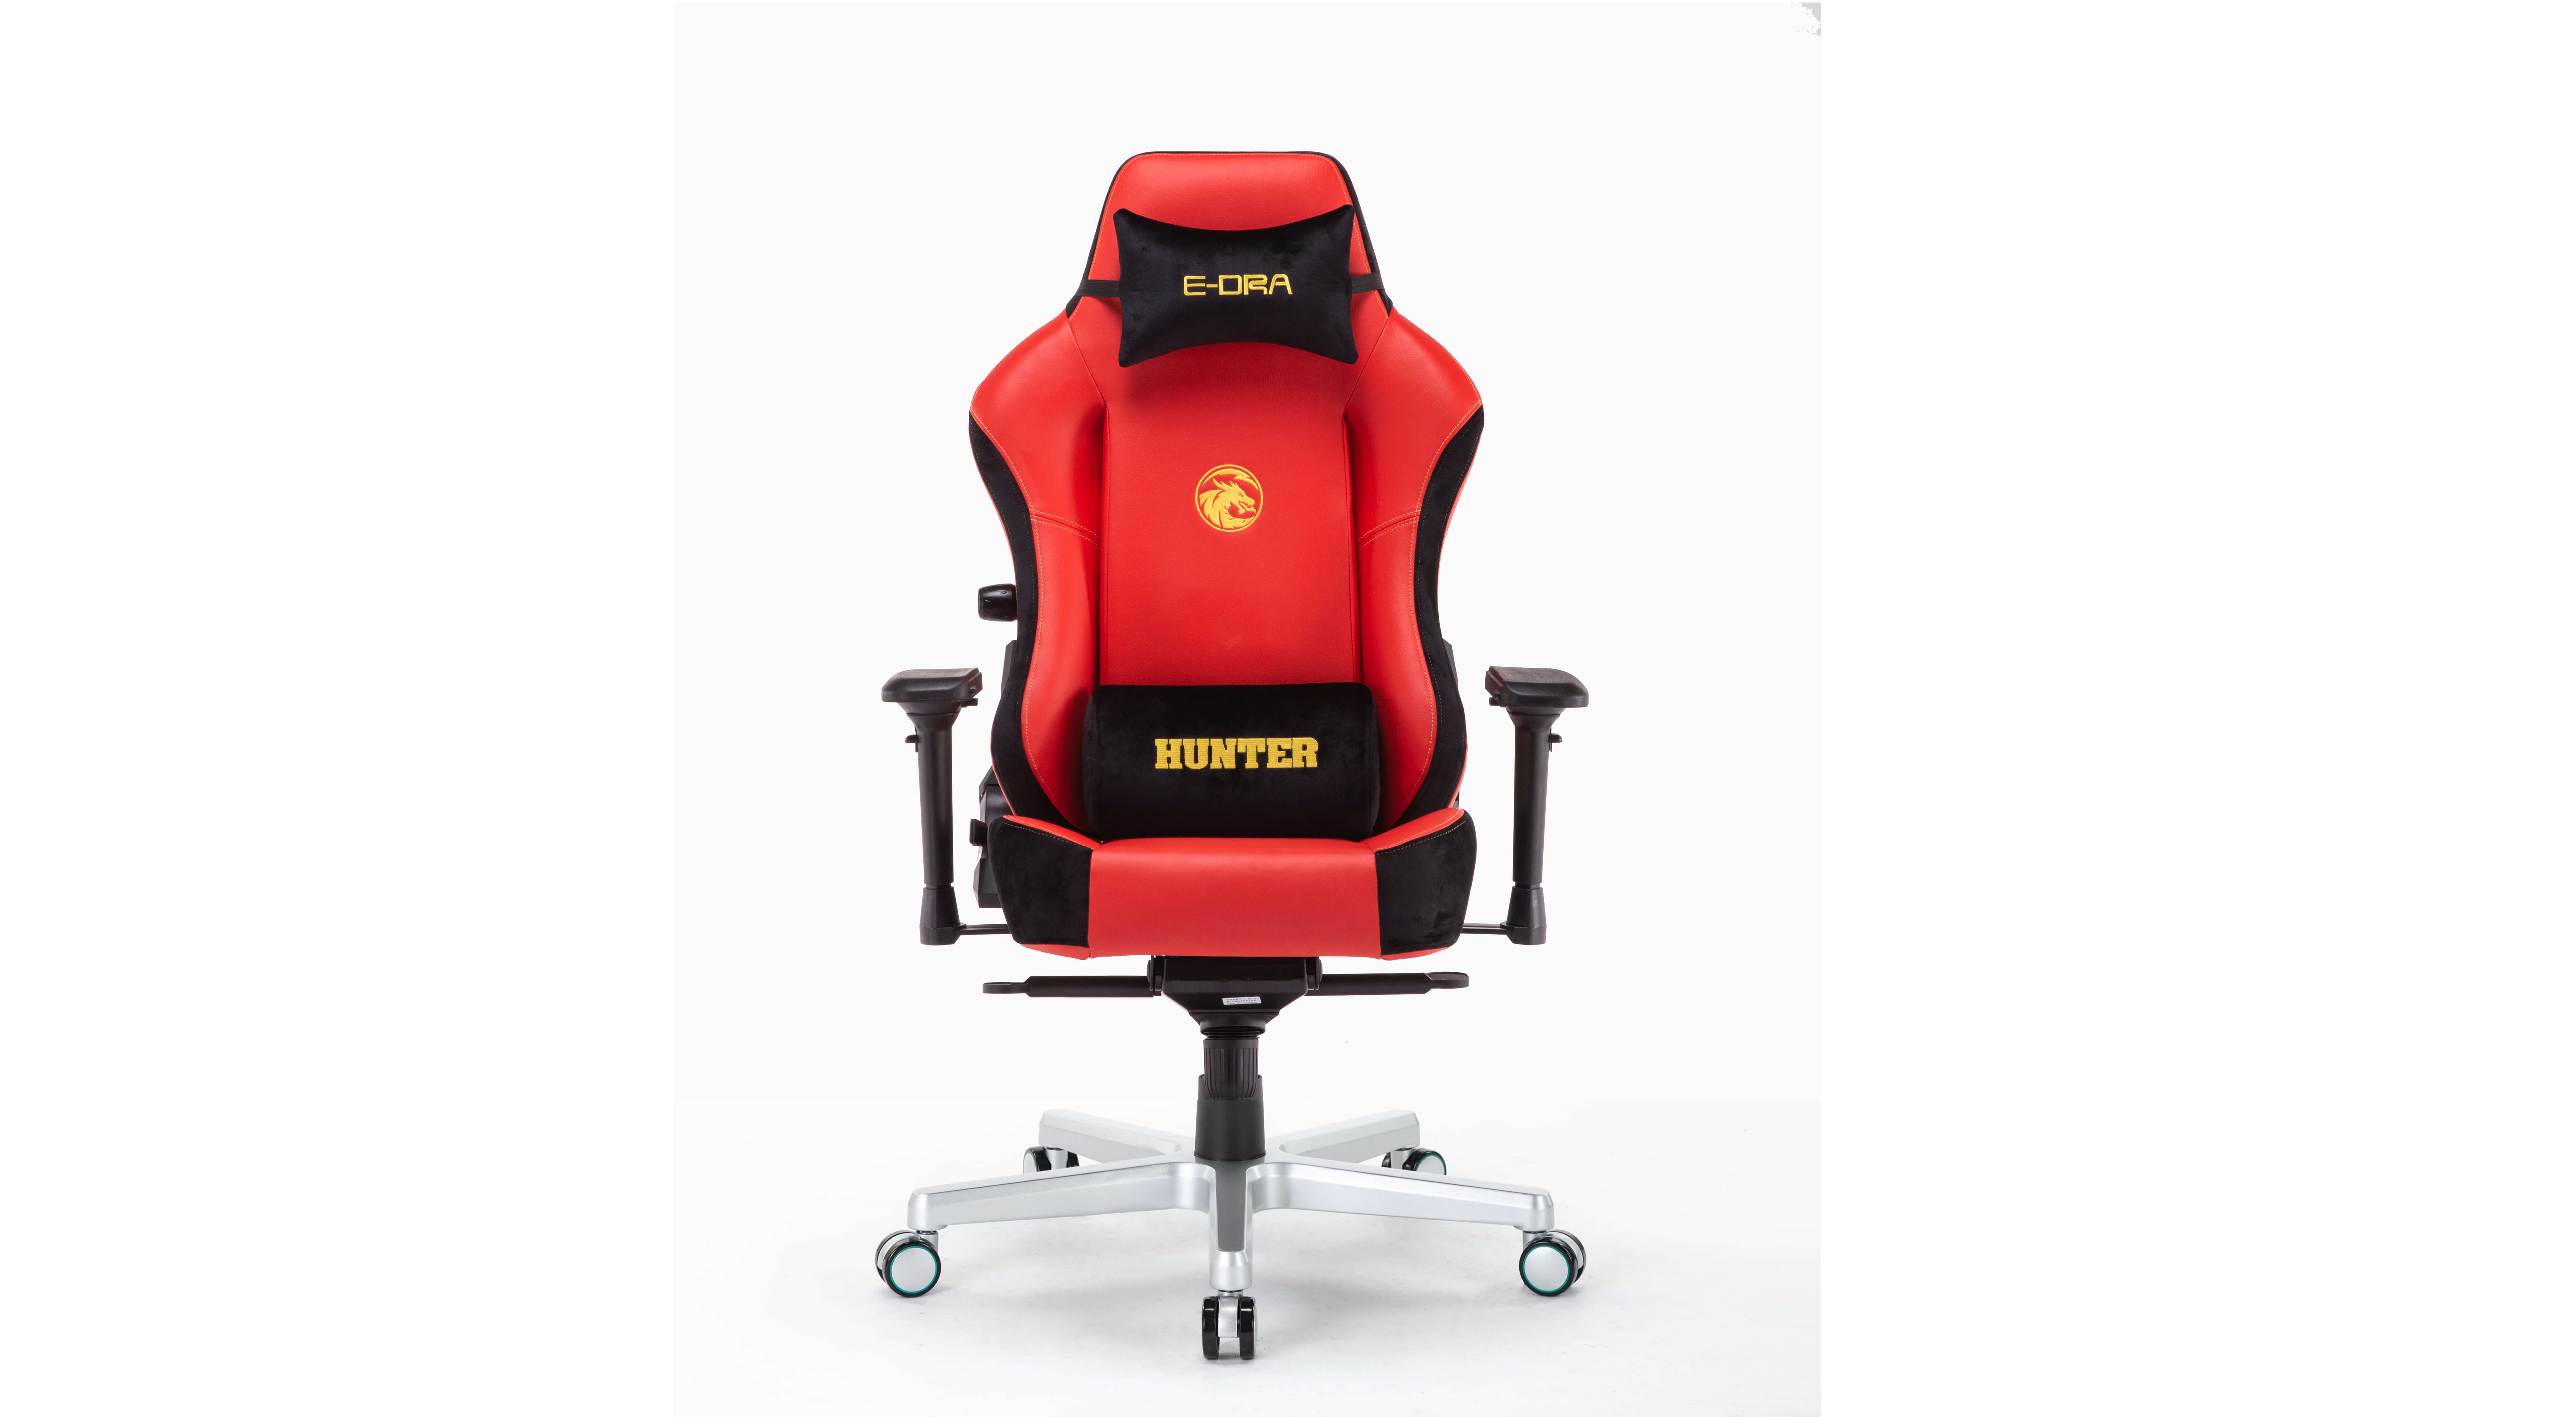 Ghế game E-Dra Hunter Gaming Chair - EGC 206 Red có thiết kế hiện đại